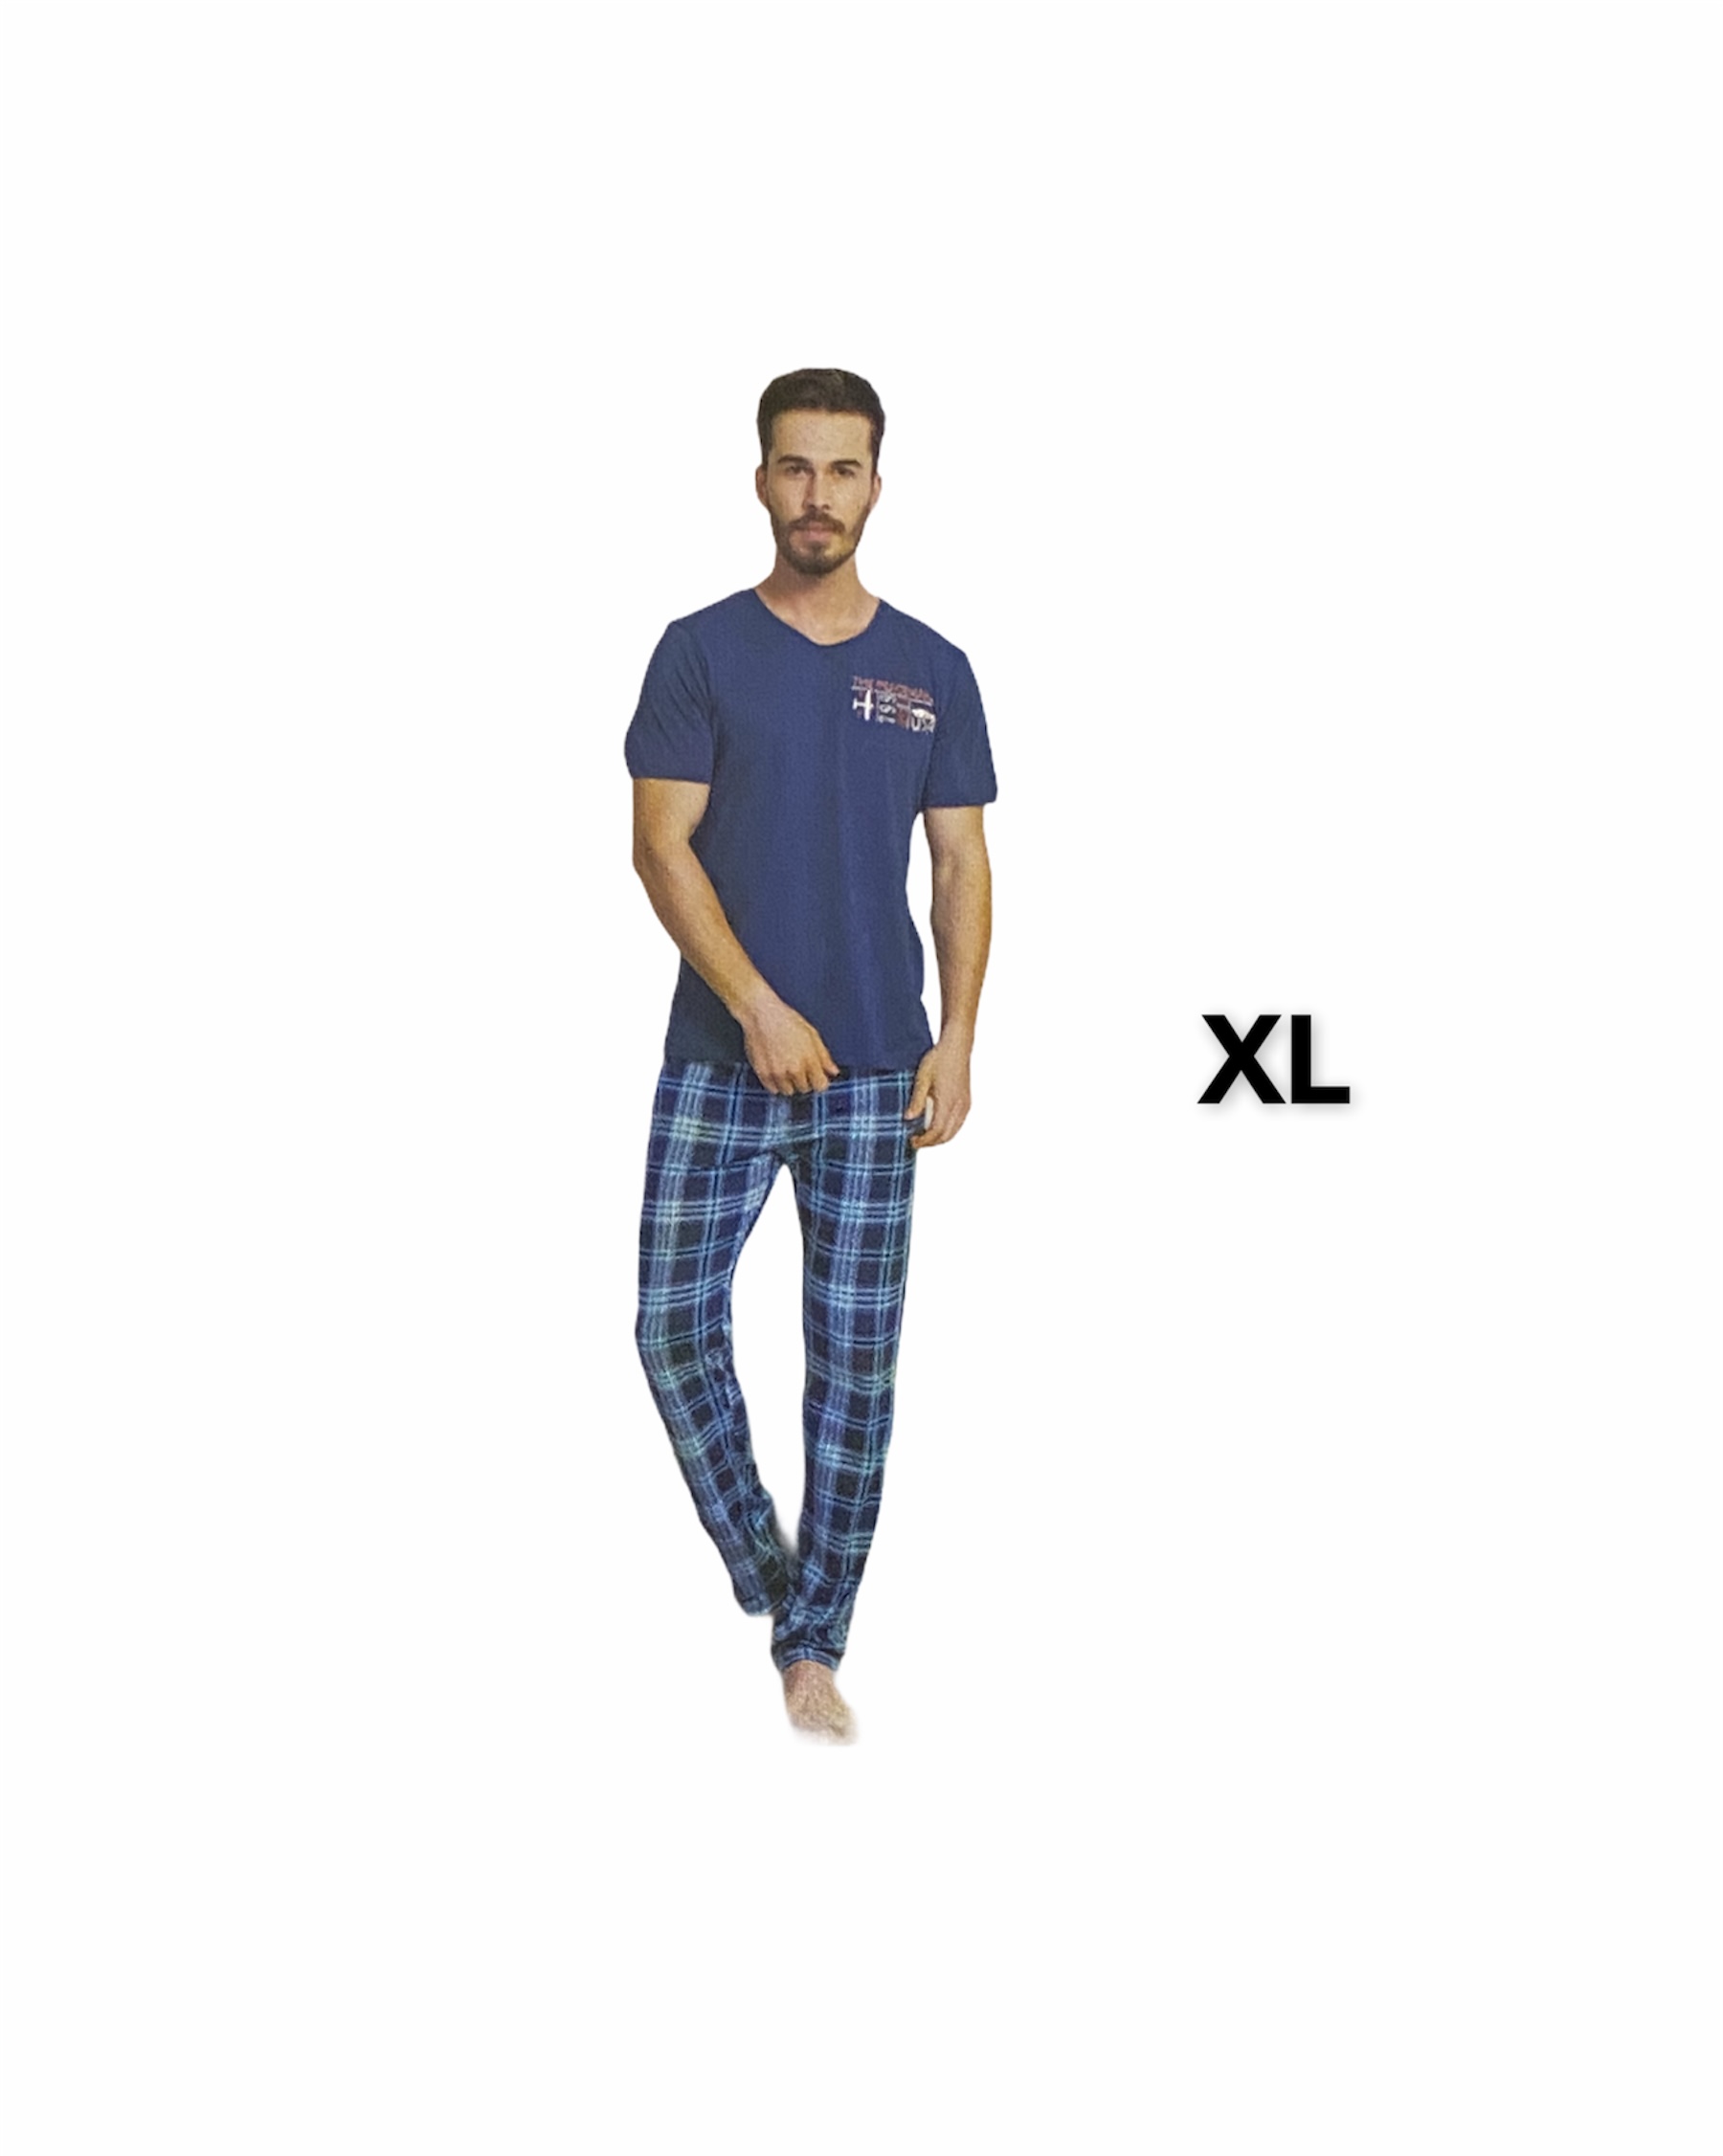 Pánske pyžamo značky Gazzaz, tm.modré; XL